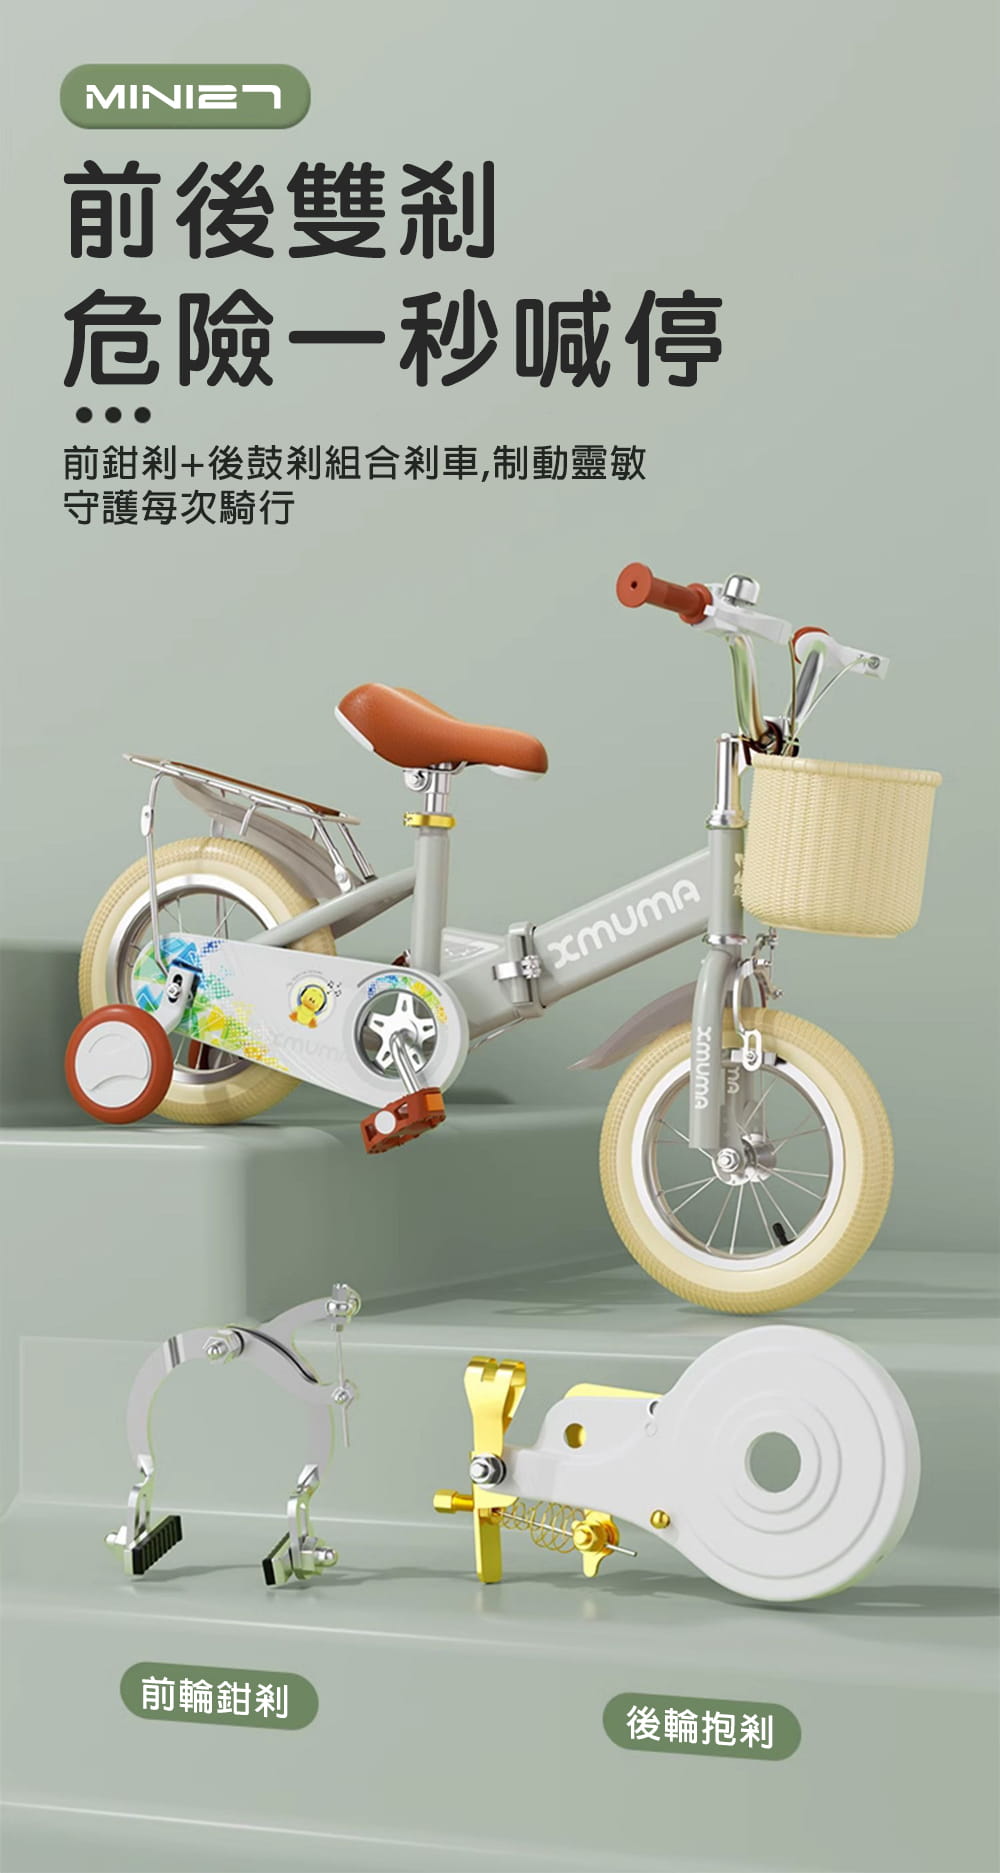 BIKEONE MINI27 兒童折疊自行車16吋男女寶寶小孩摺疊腳踏單車後貨架版款顏色可愛清新 9